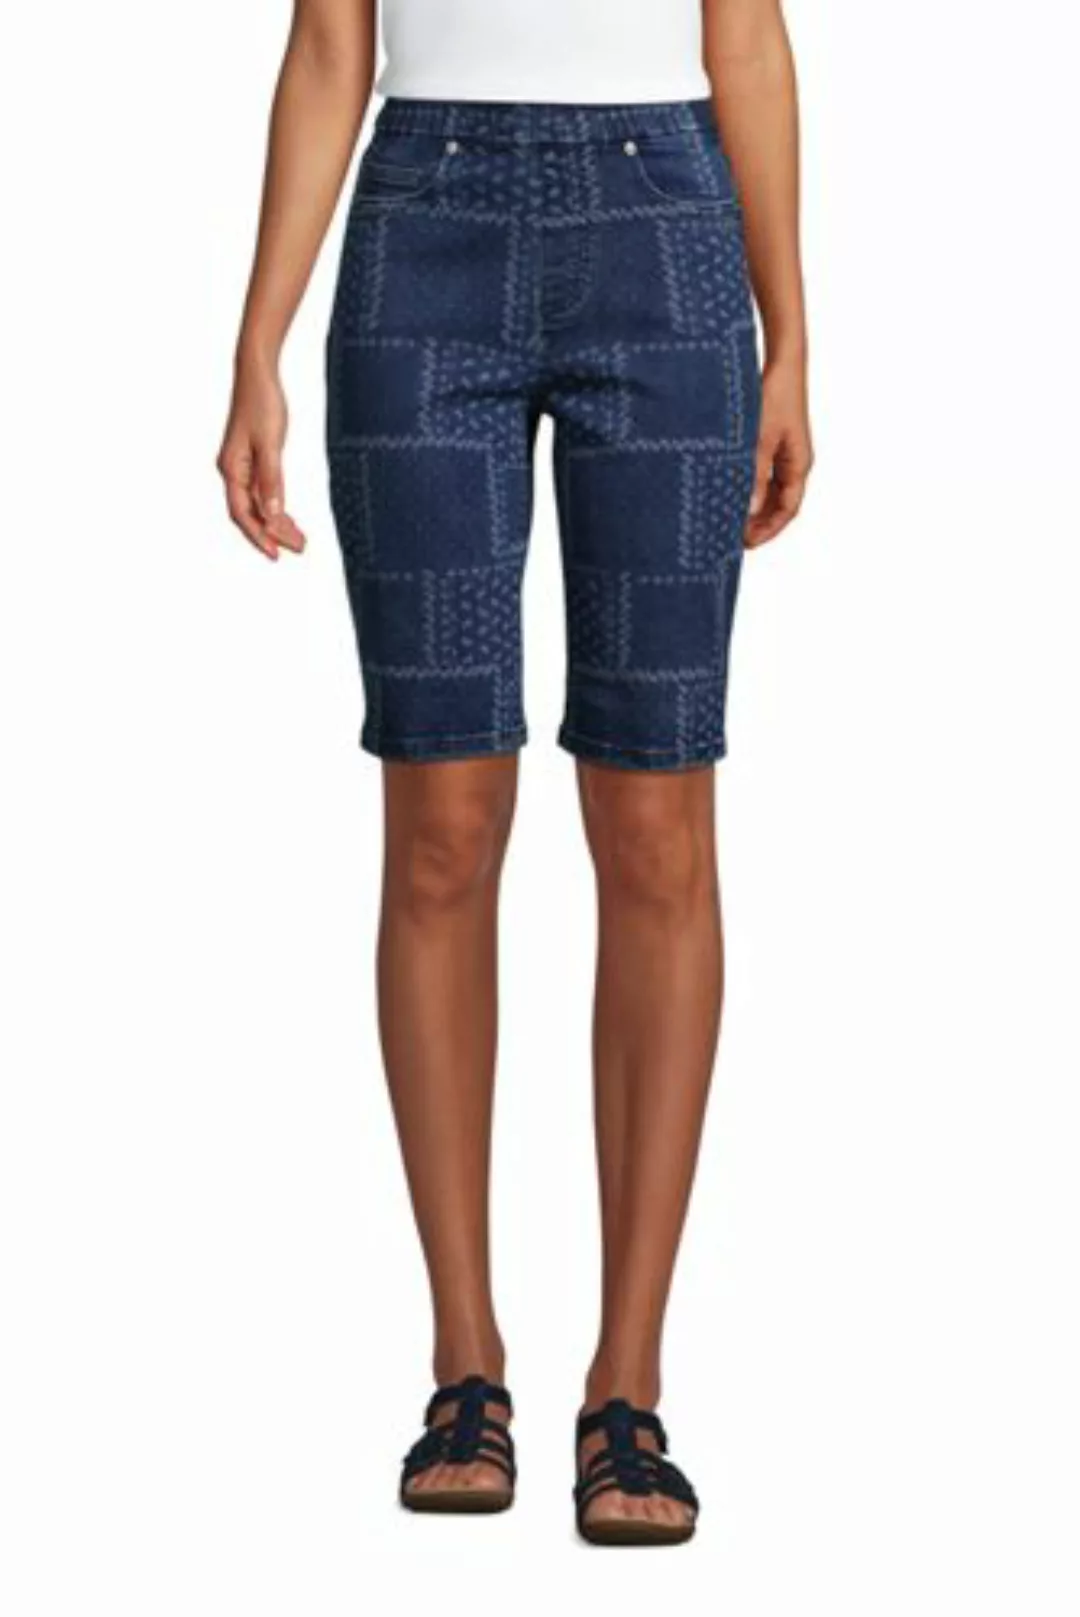 Jeans-Bermudas High Waist mit Dehnbund in großen Größen, Damen, Größe: XL P günstig online kaufen